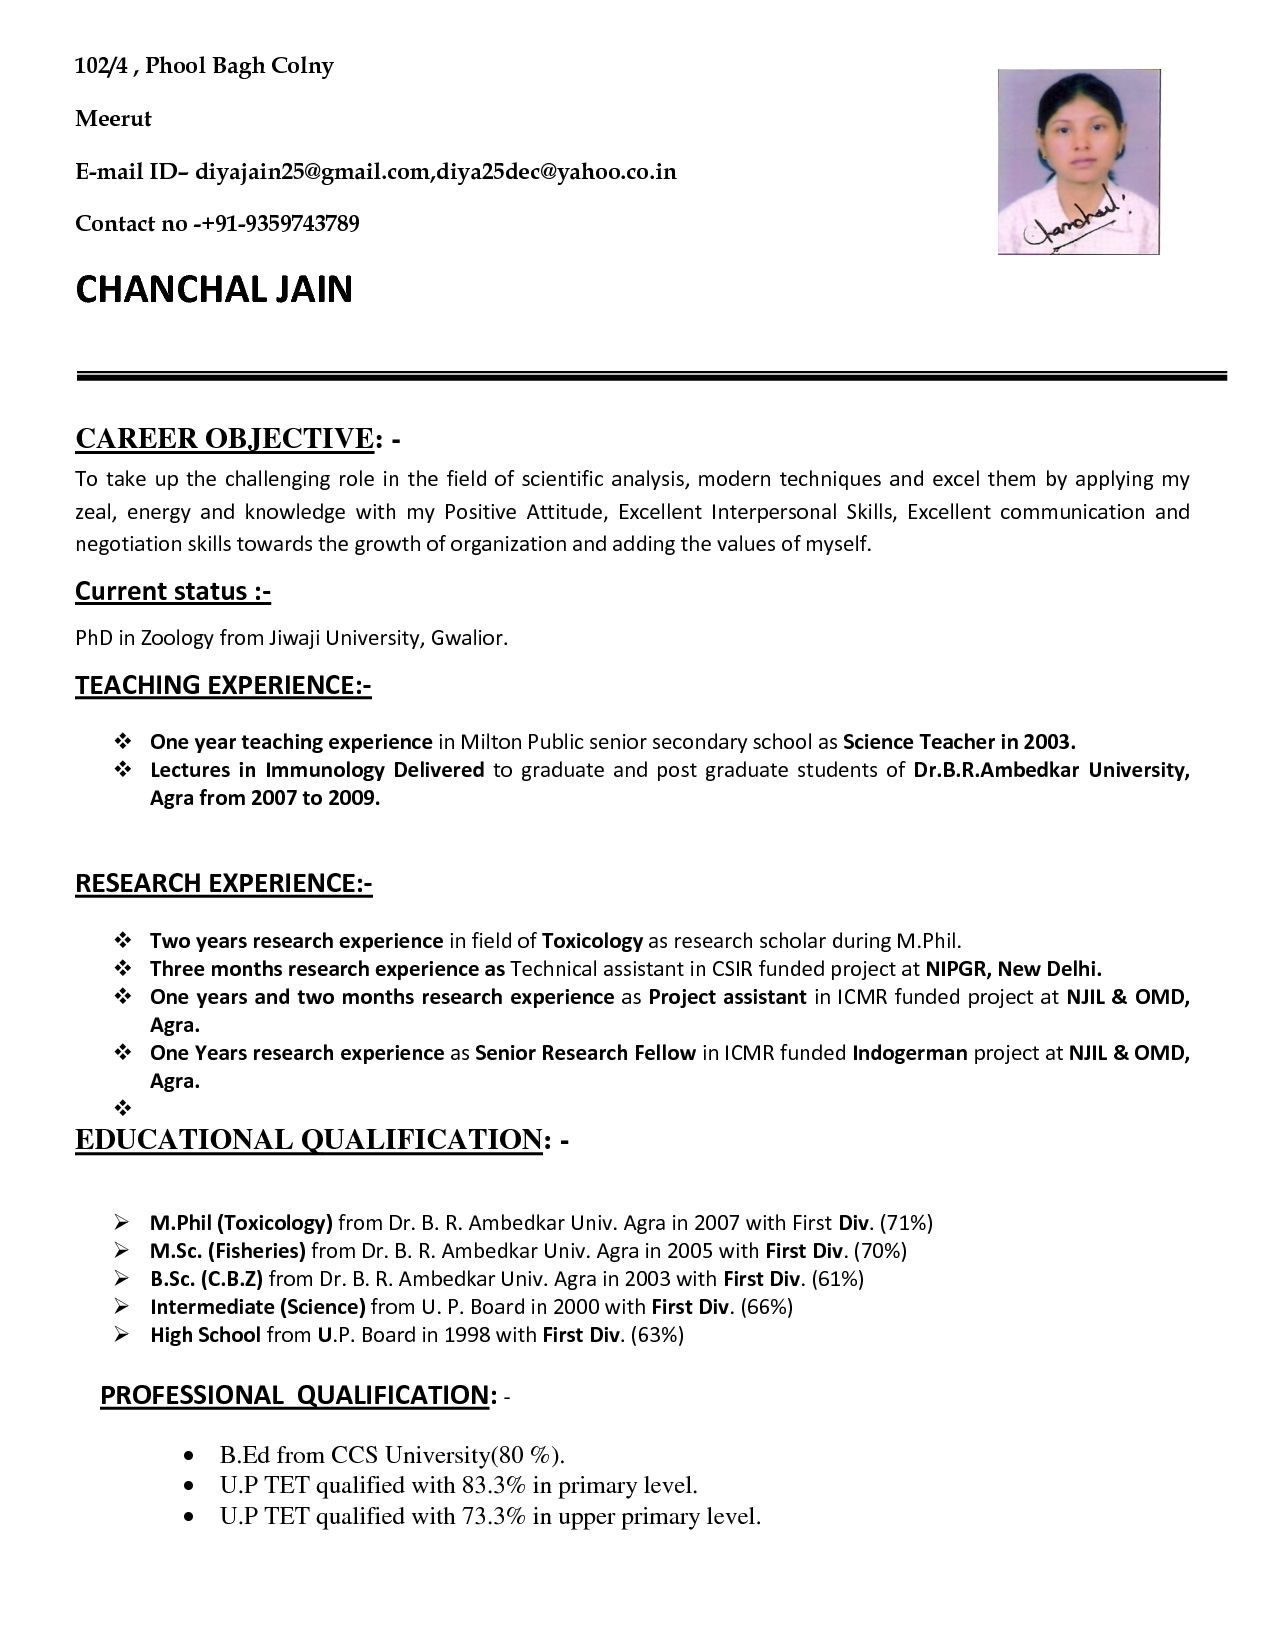 Resume Format For School Teacher Job It Resume Cover Letter Sample